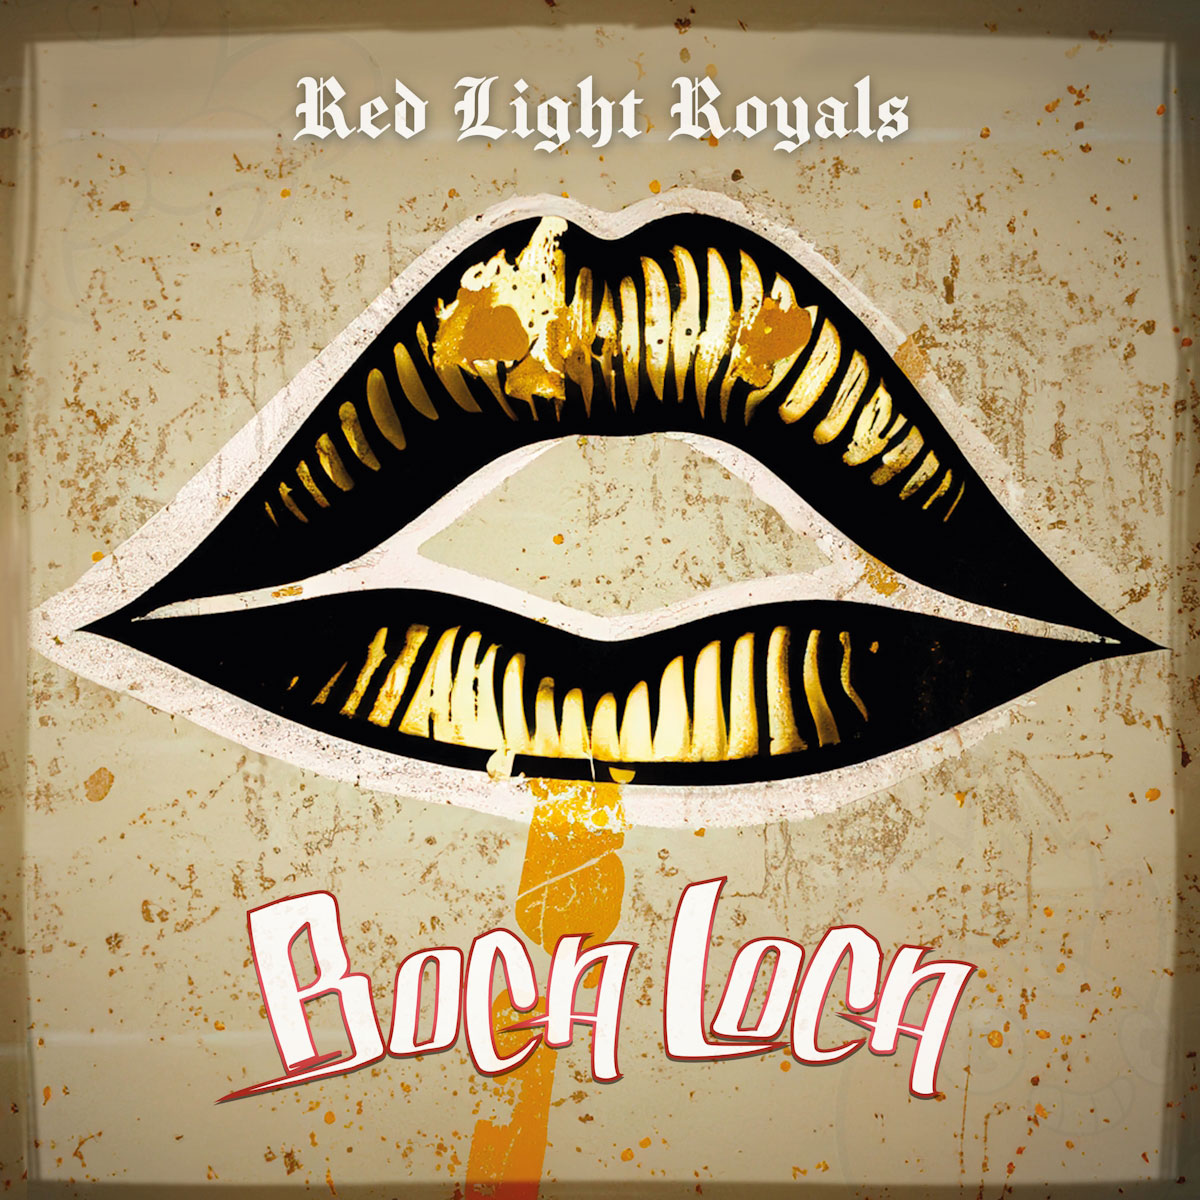 Scopri di più sull'articolo “Boca Loca” è il nuovo singolo dei Red Light Royals